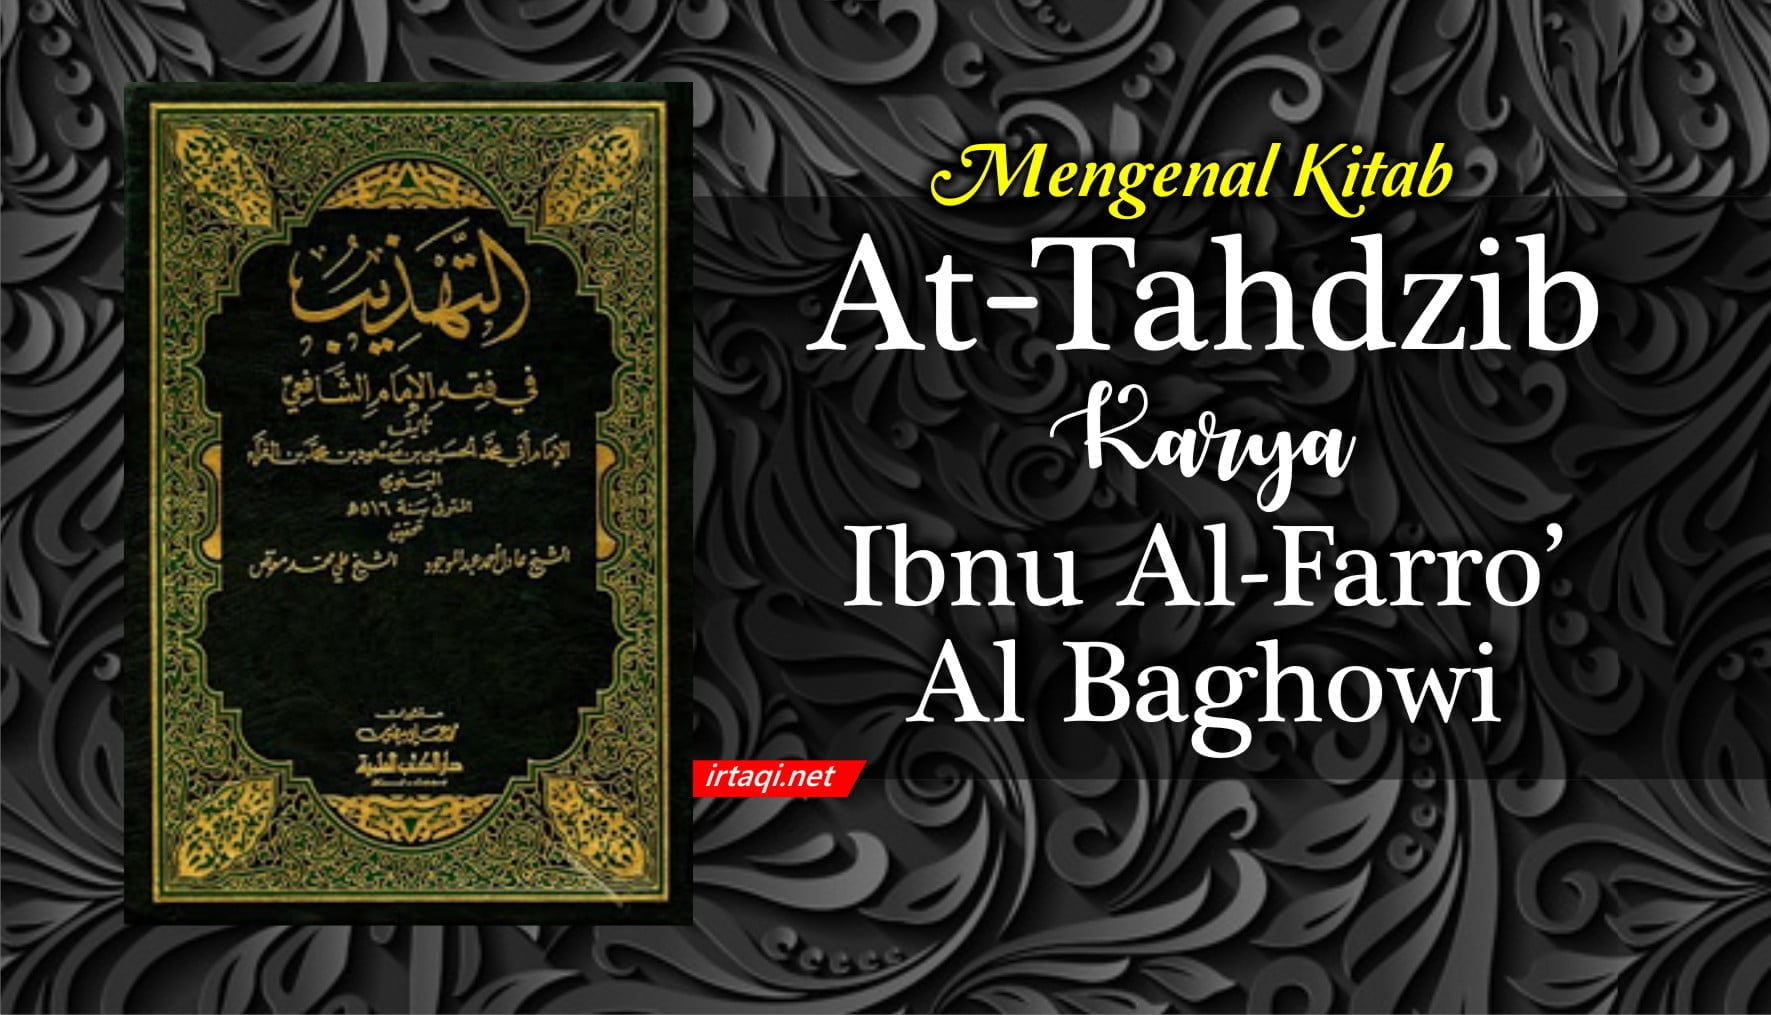 MENGENAL KITAB AT TAHDZIB KARYA IBNU AL-FARRO' AL BAGHOWI